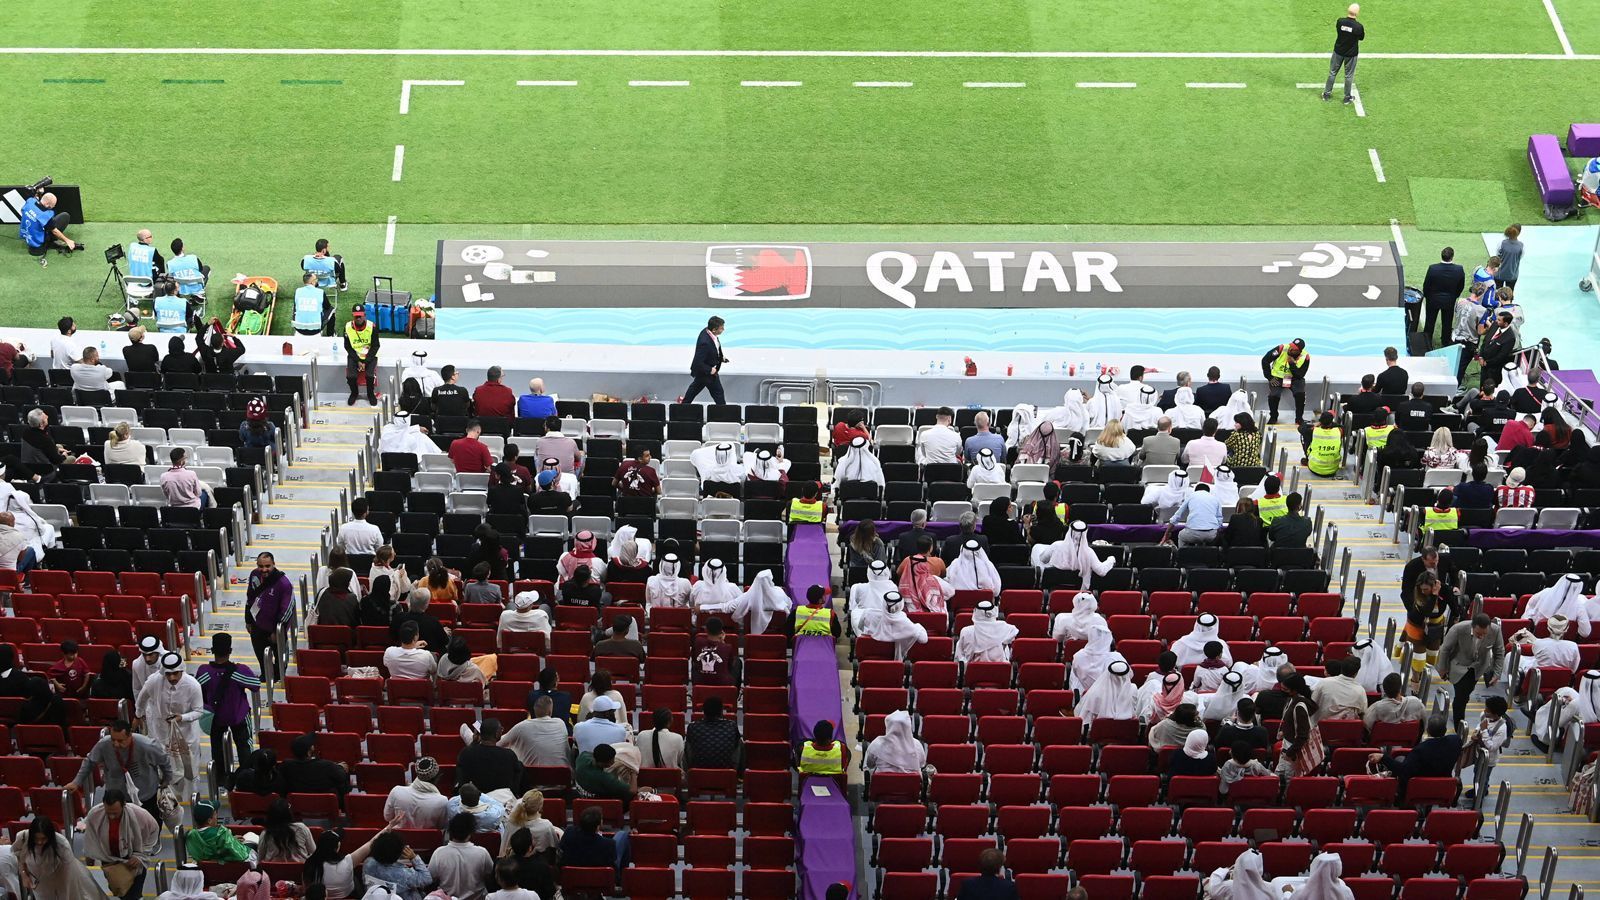 
                <strong>Katars Trainer dankt der "großartigen Atmosphäre"</strong><br>
                Katars spanischer Trainer Felix Sanchez störte sich am Zuschauerschwund jedoch nicht, bedankte sich sogar bei den Fans und entschuldigte sich für den Auftritt seines Teams. "Es tut uns leid, dass wir nicht zu dieser großartigen Atmosphäre und der Party beitragen konnten", sagte er nach dem Spiel pflichtschuldig.
              